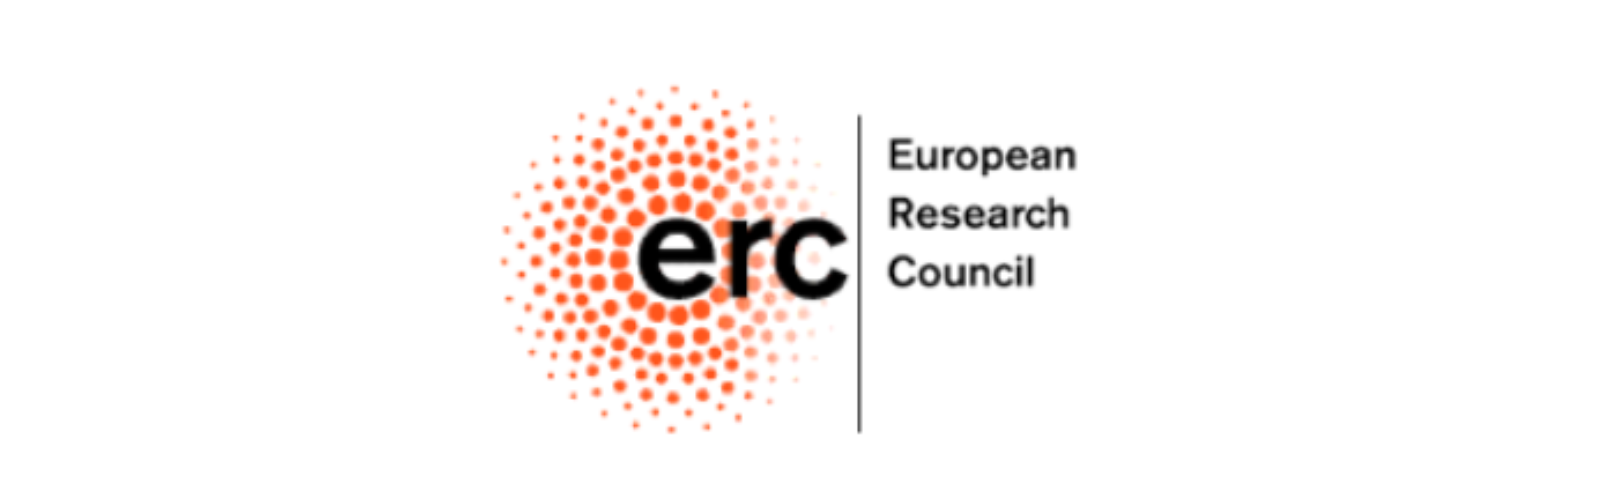 La Universidad de Murcia organiza una jornada informativa sobre el European Research Council